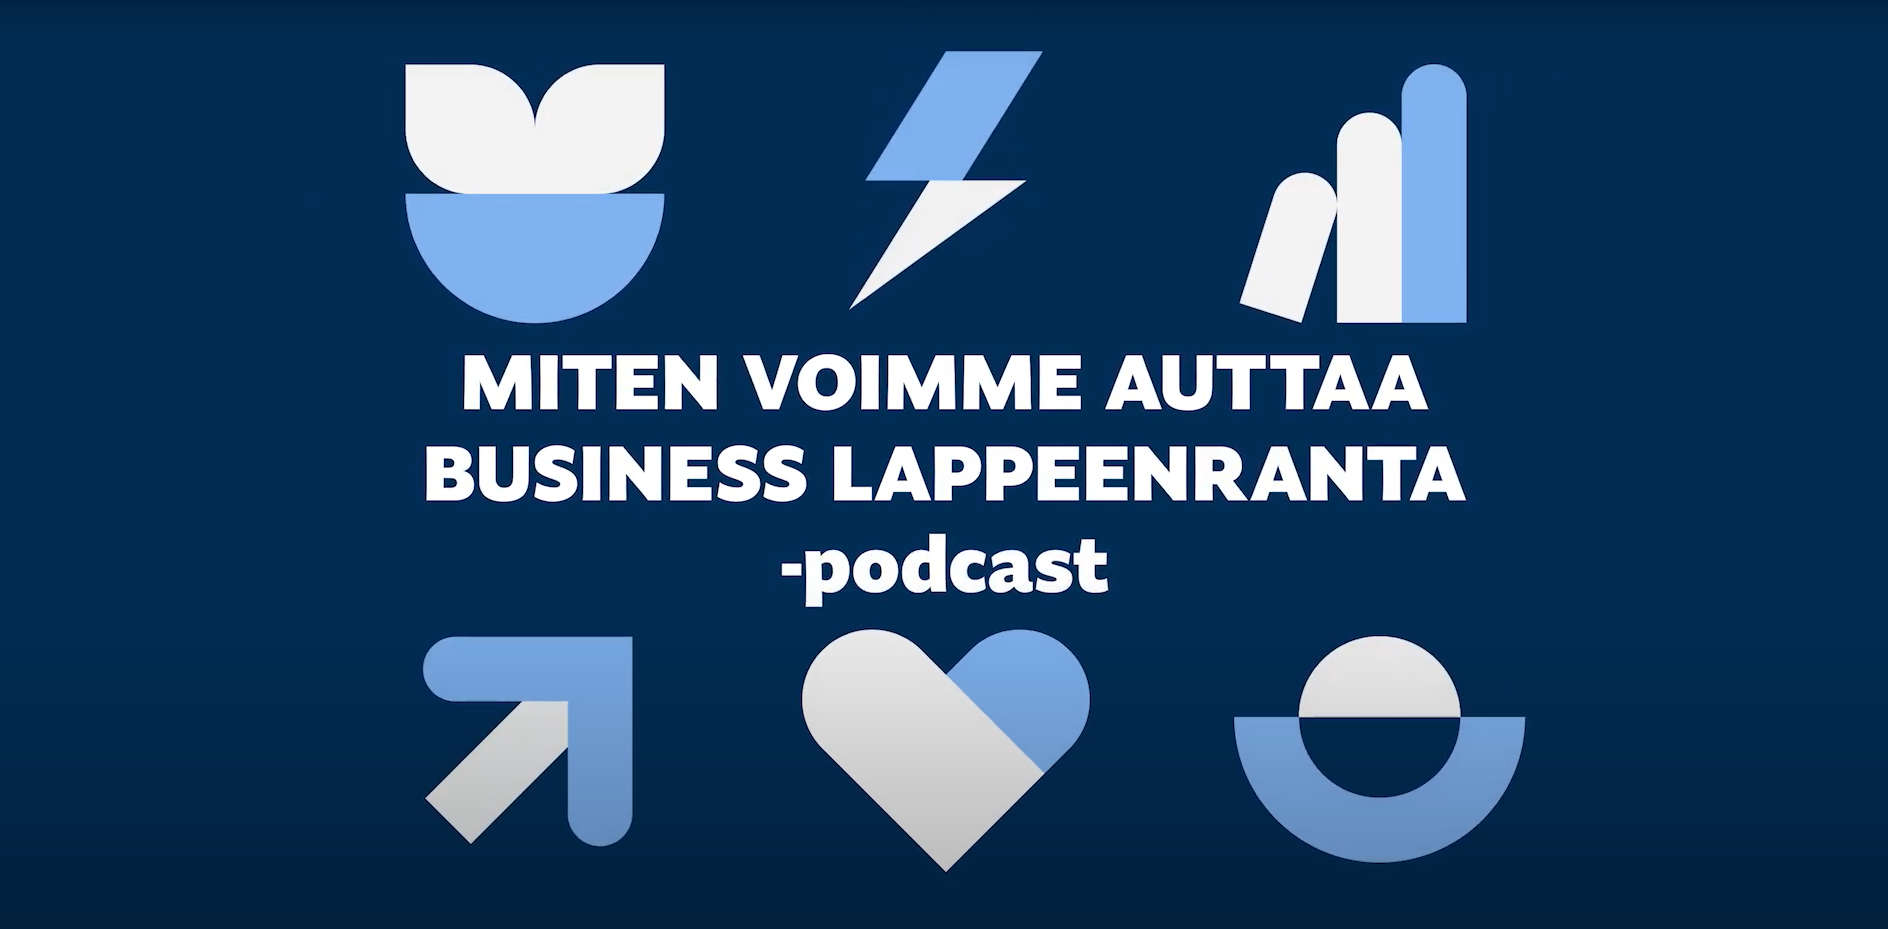 Sininen tausta ja teksti: "miten voimme auttaa business Lappeenranta -podcast".